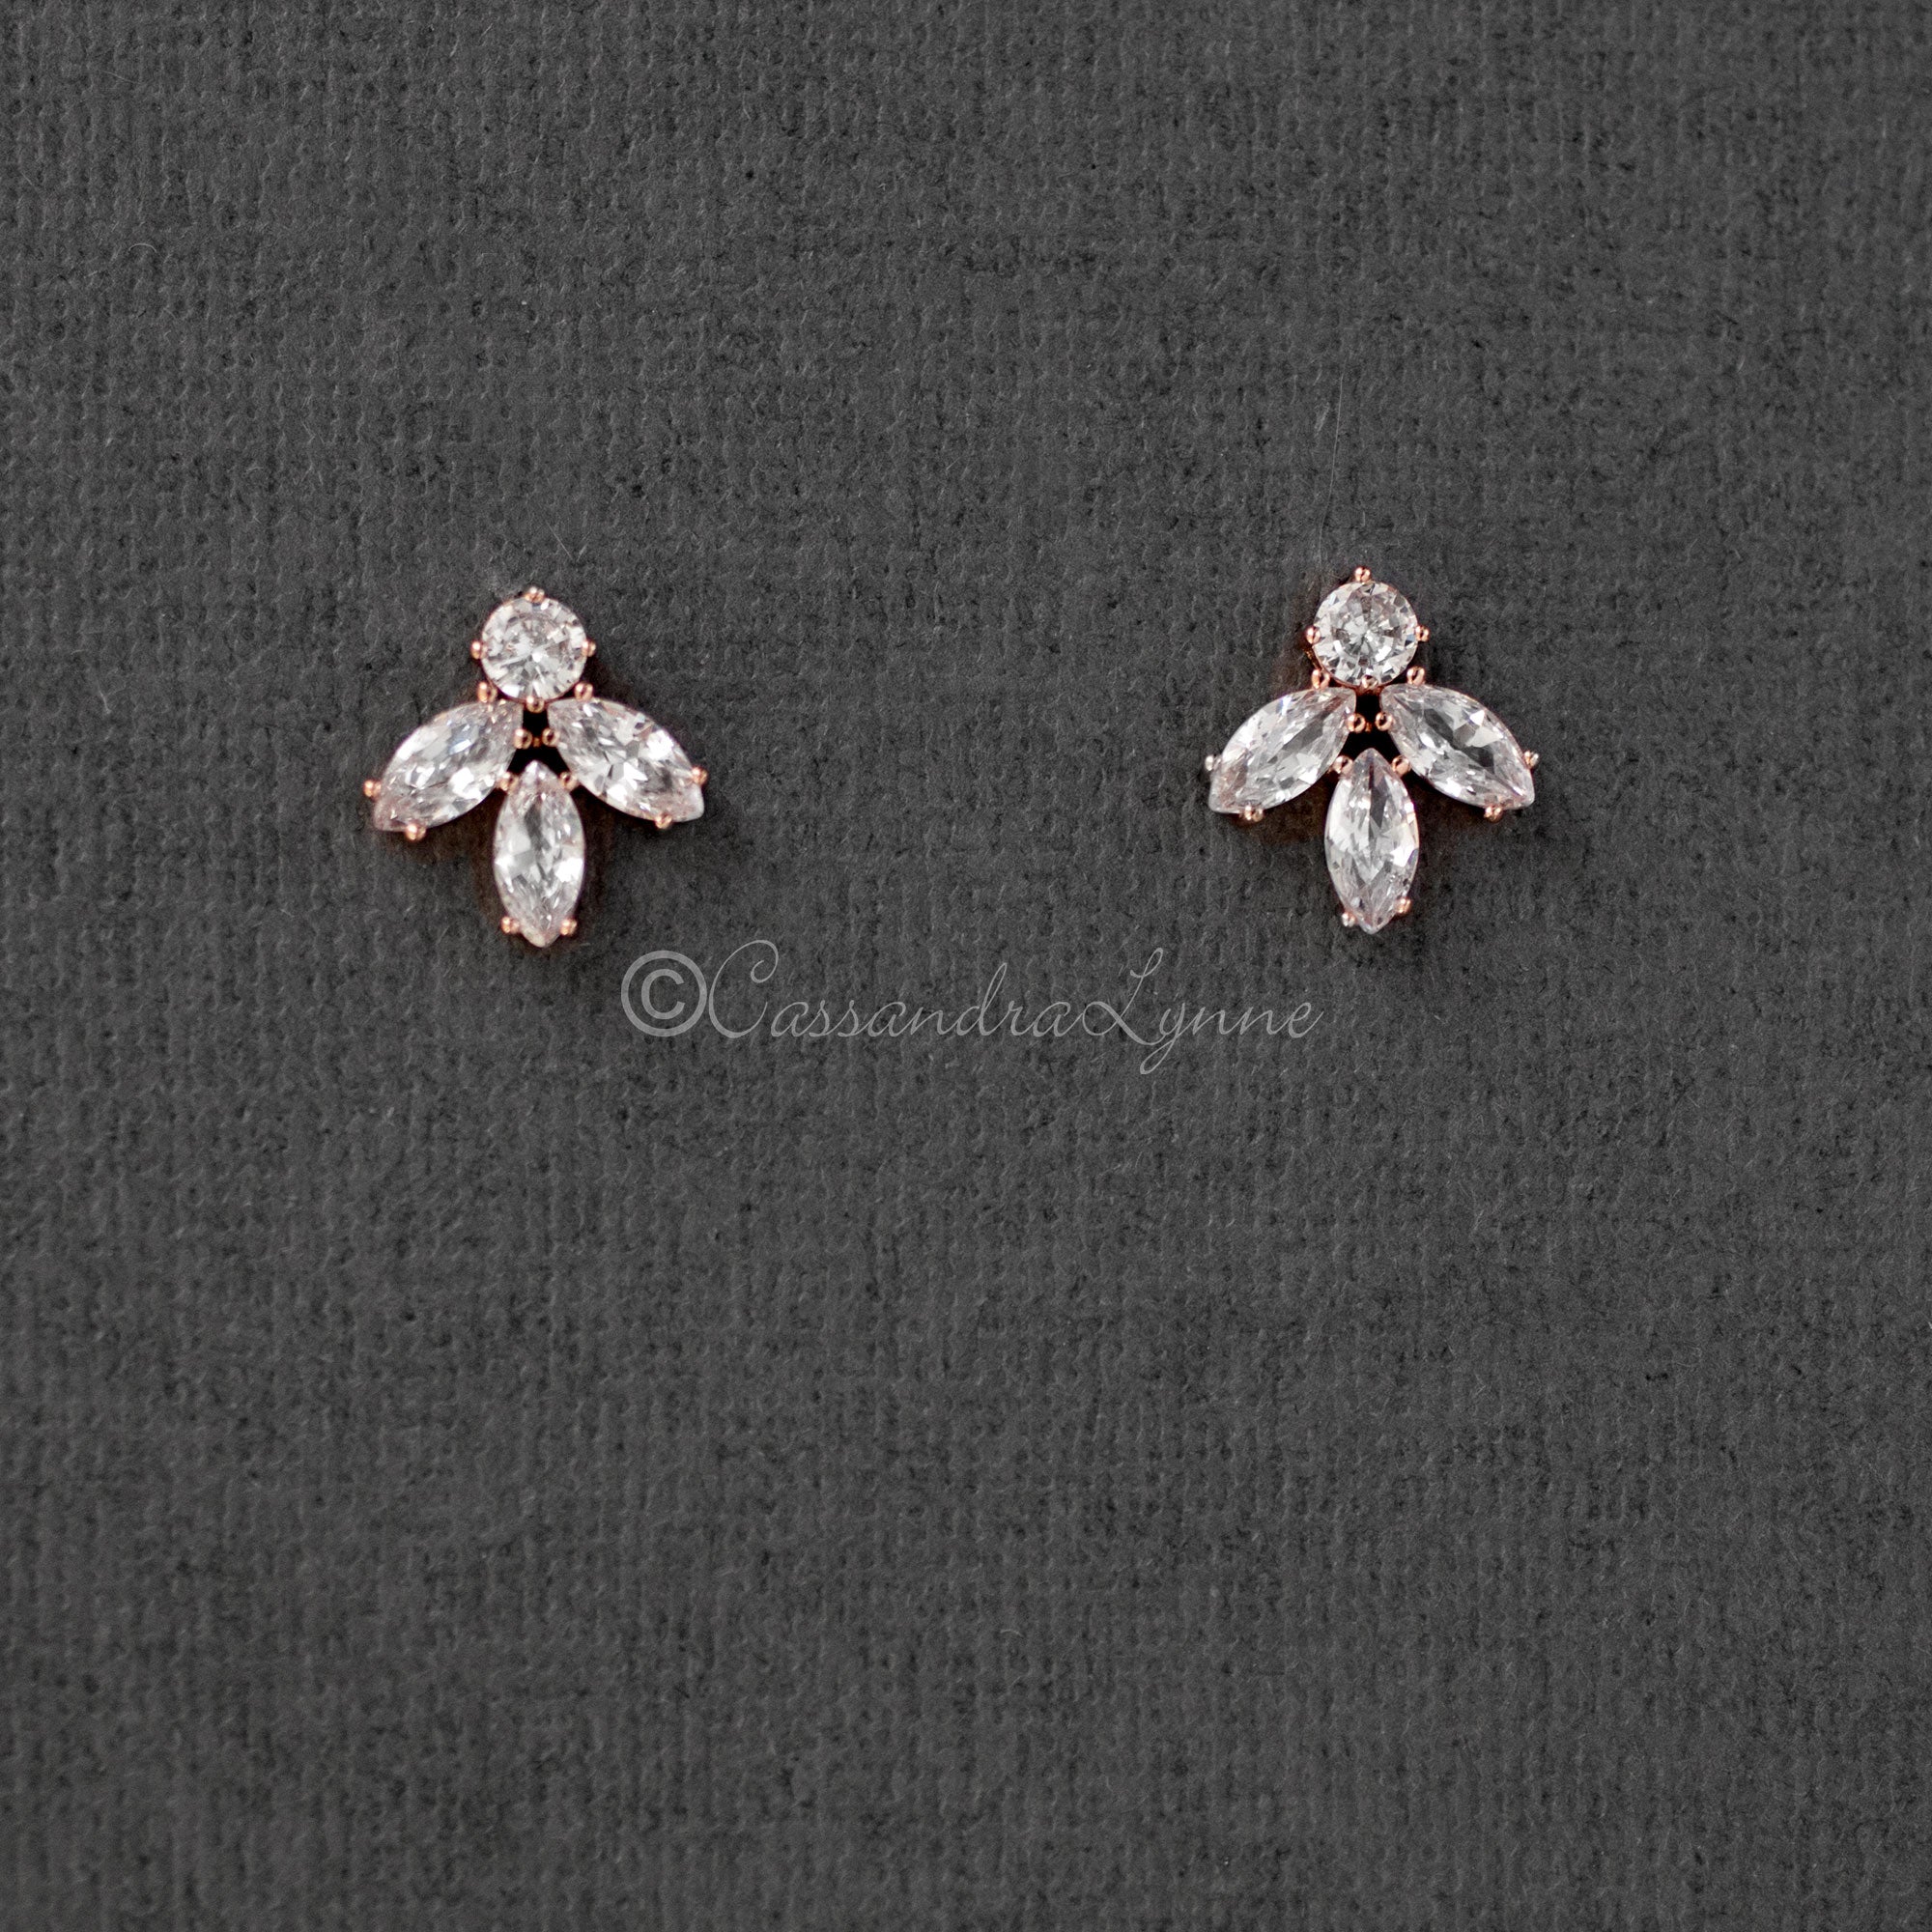 Minimalist Marquise Leaf CZ Stud Earrings - Cassandra Lynne